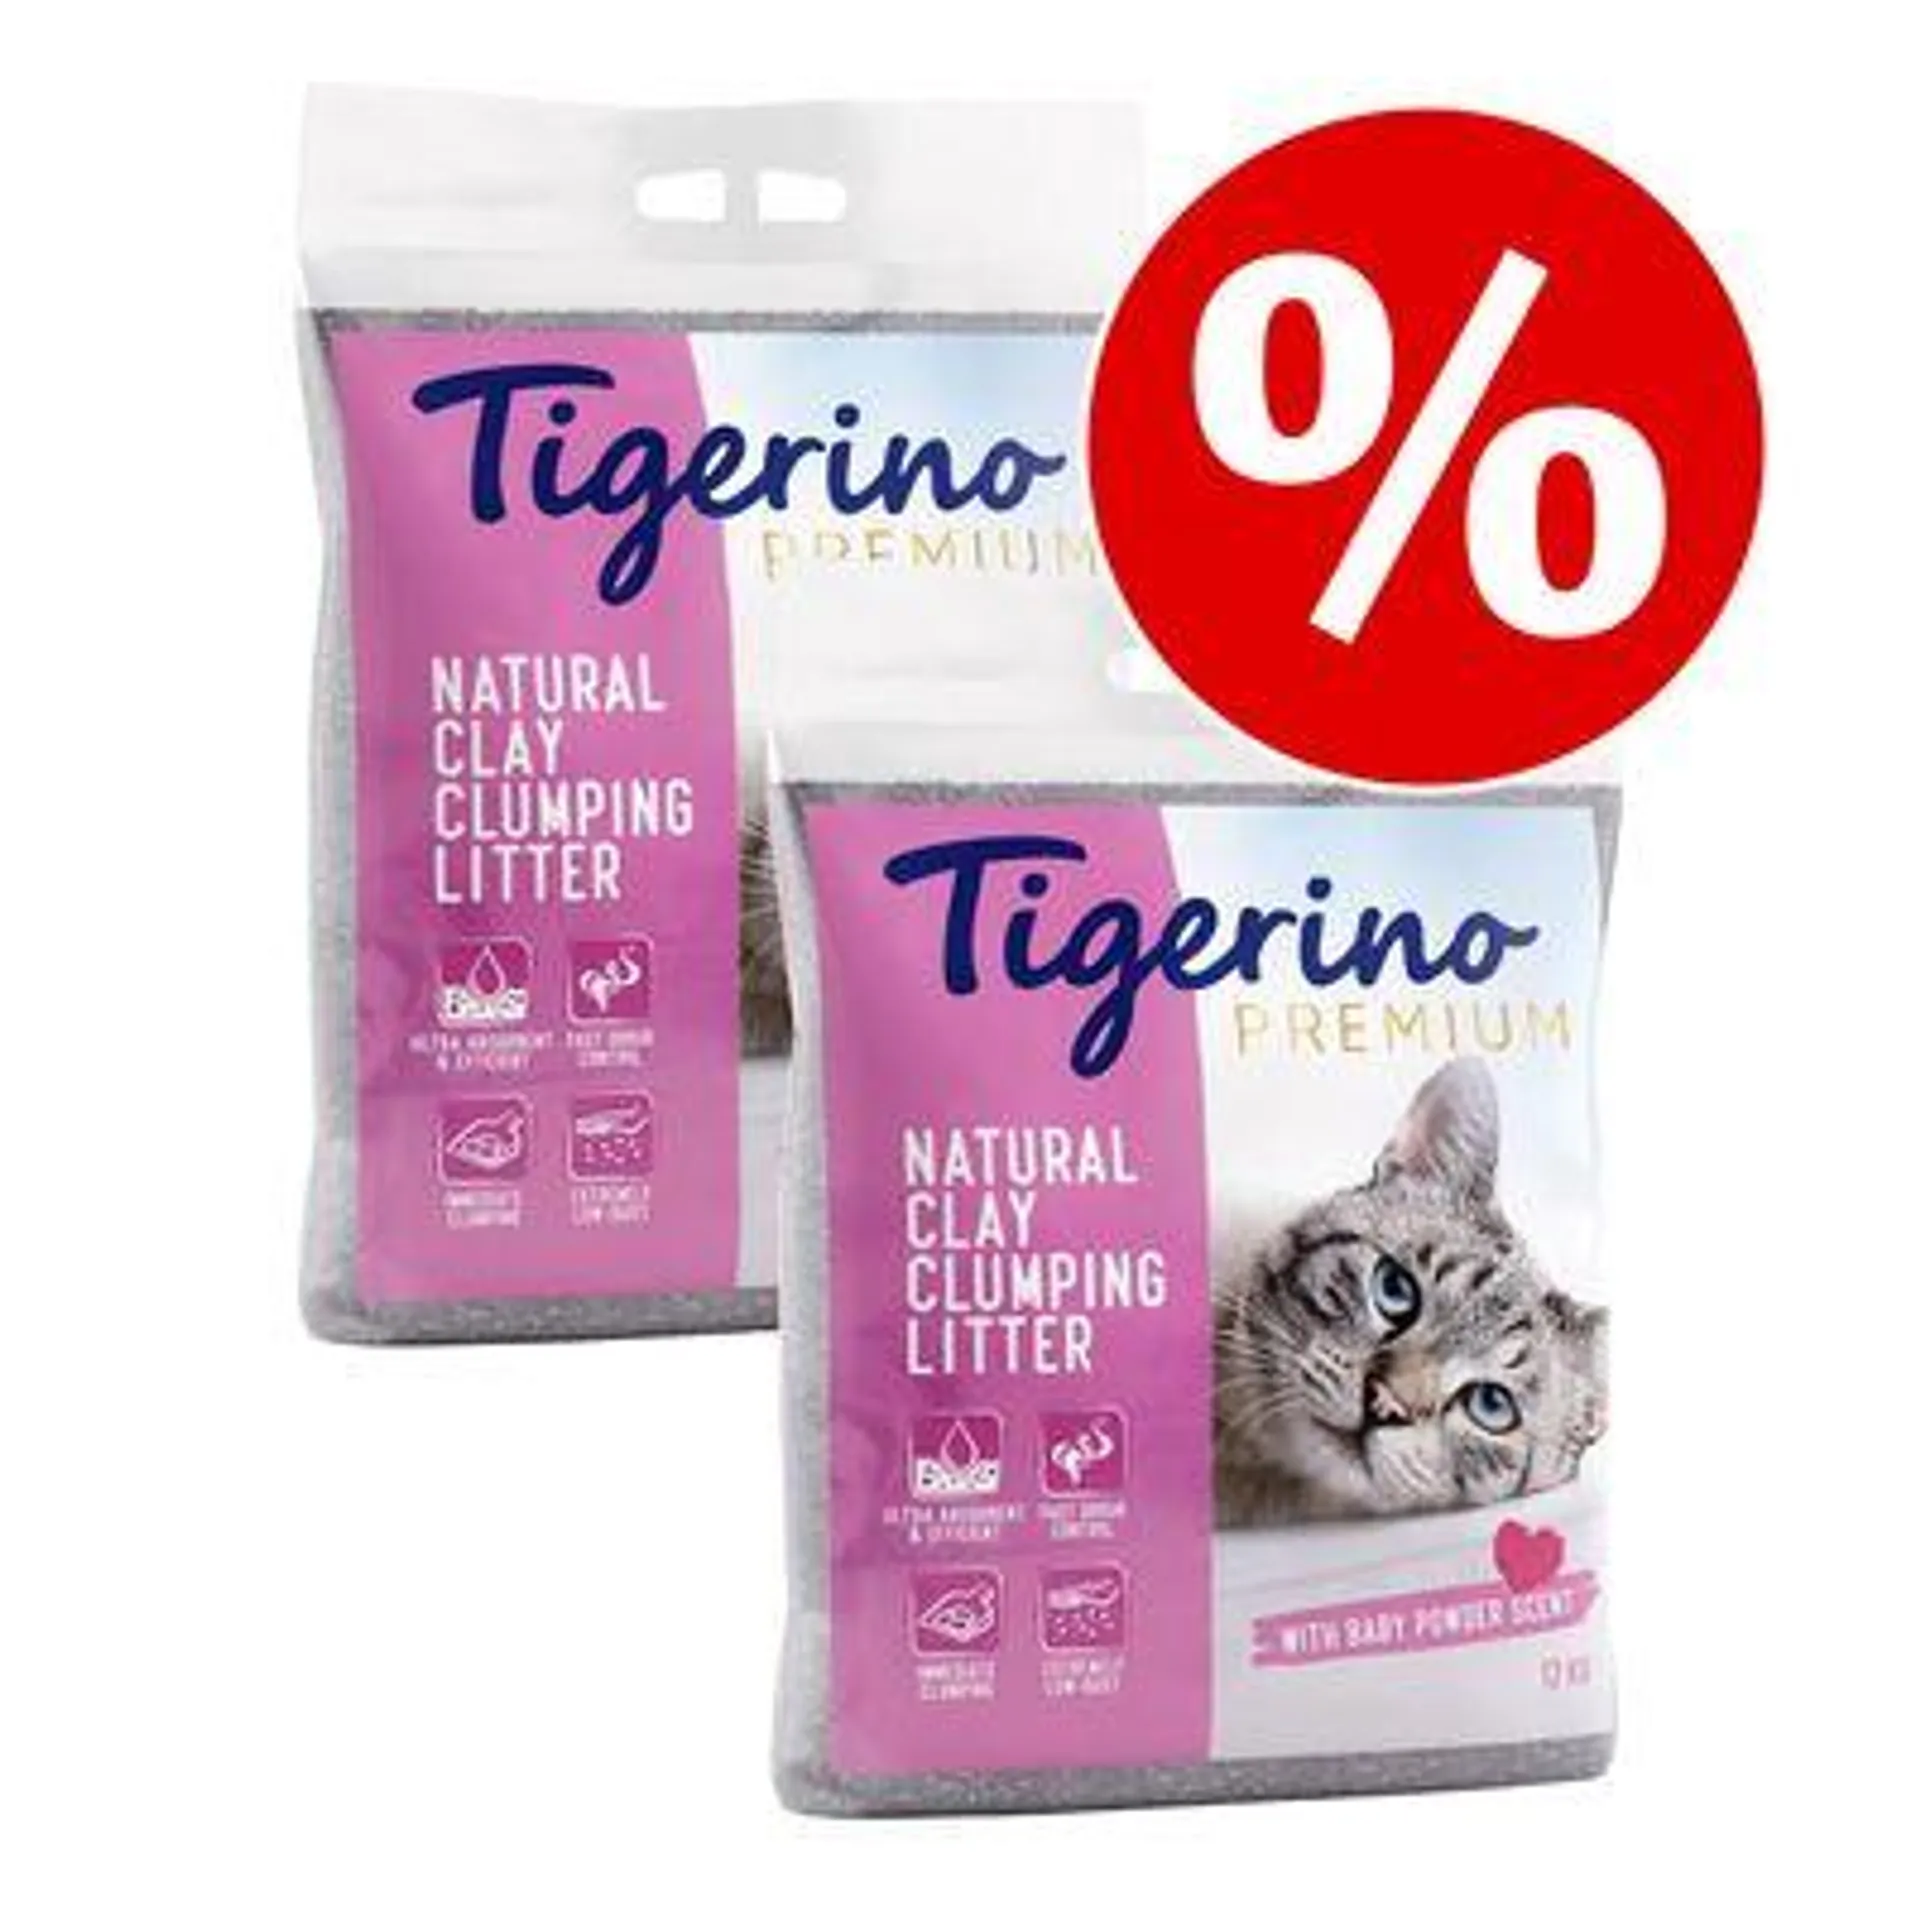 2 x 12kg Tigerino Canada / Premium Cat Litter - Special Price!*